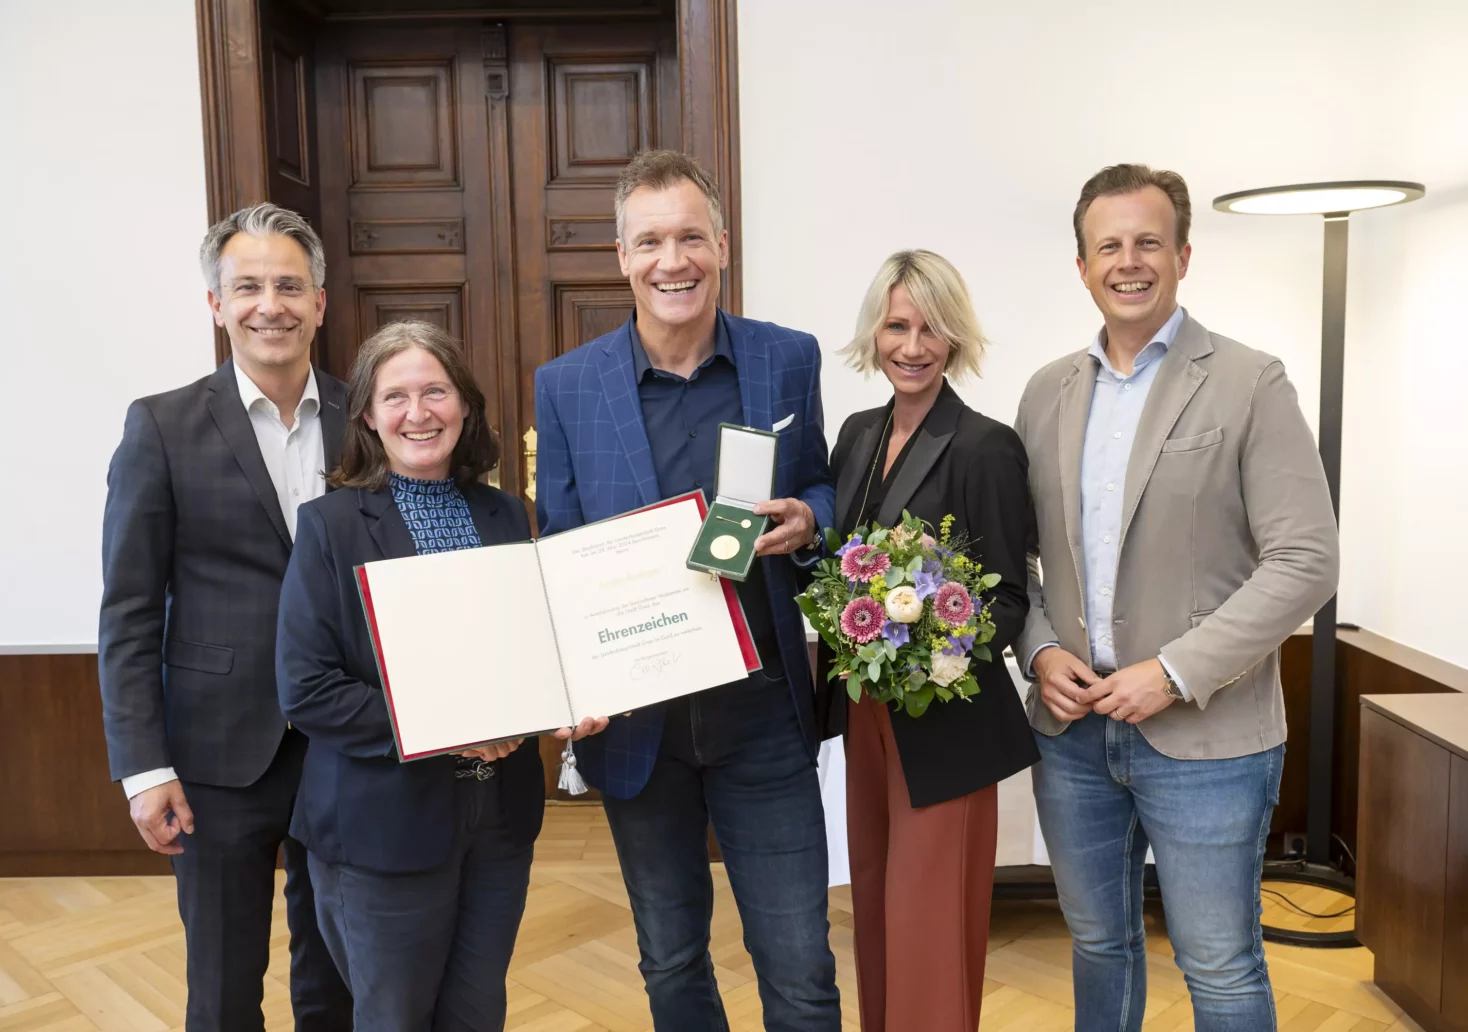 Das Bild zeigt: Stadtrat Kurt Hohensinner, Bürgermeisterin Elke Kahr, Armin Assinger mit seiner Frau Sandra und Landesrat Karlheinz Kornhäusl